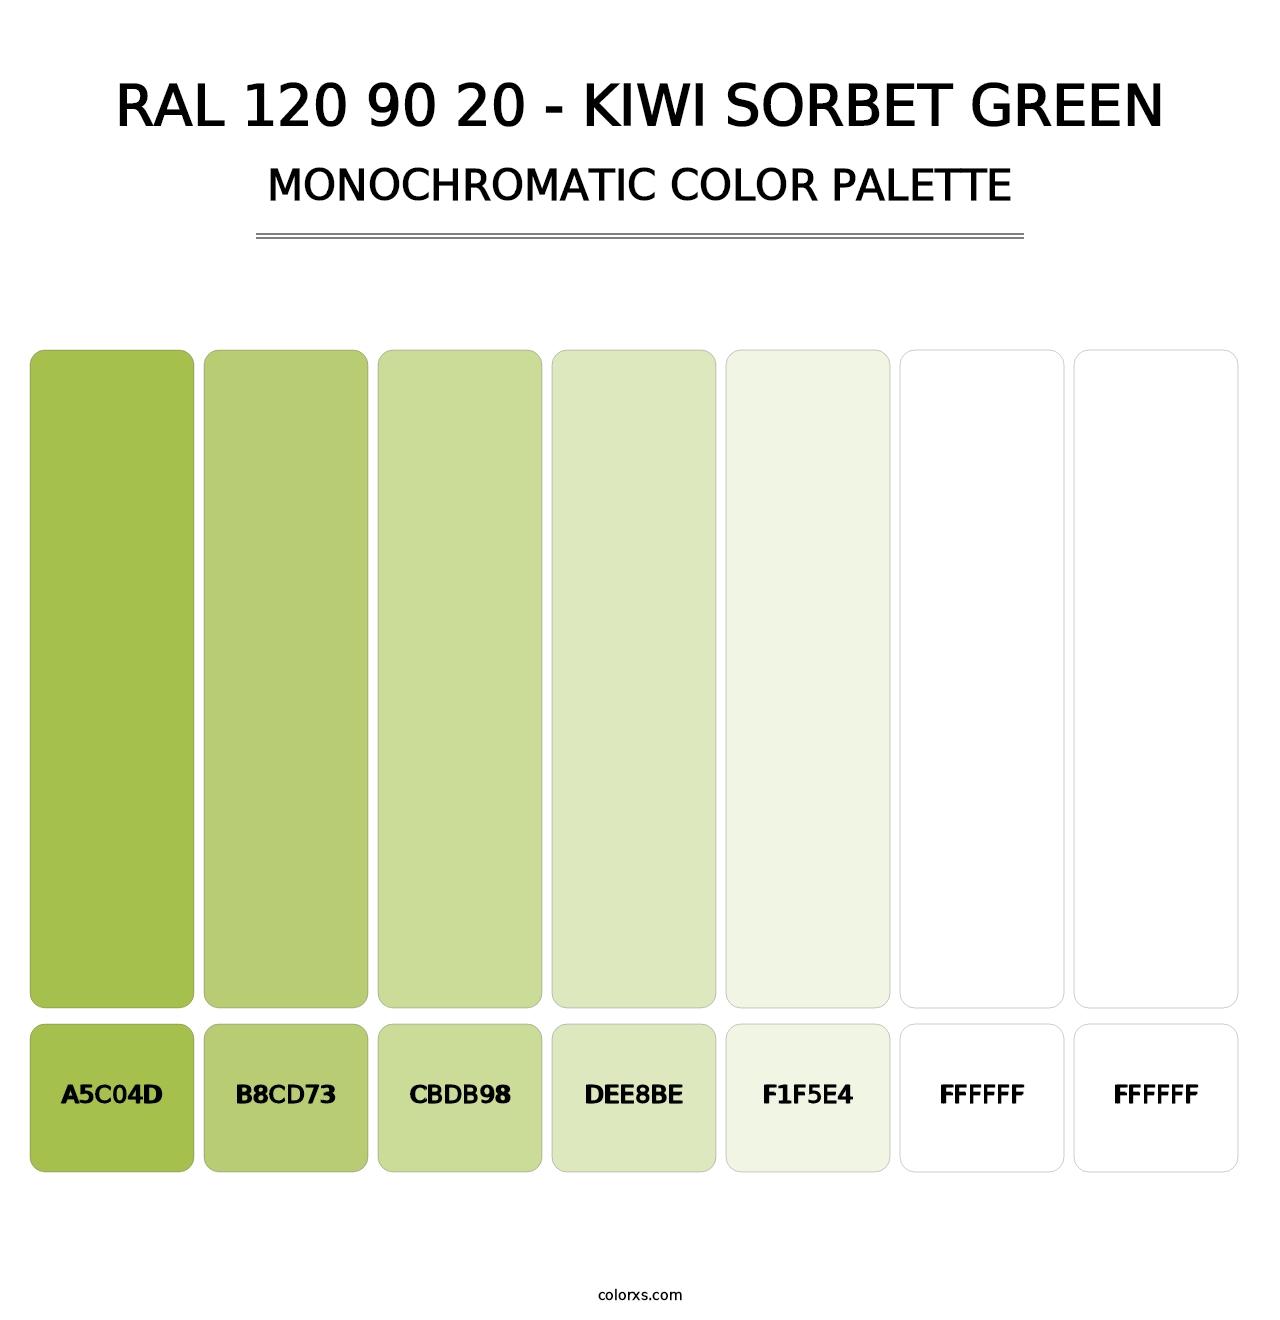 RAL 120 90 20 - Kiwi Sorbet Green - Monochromatic Color Palette